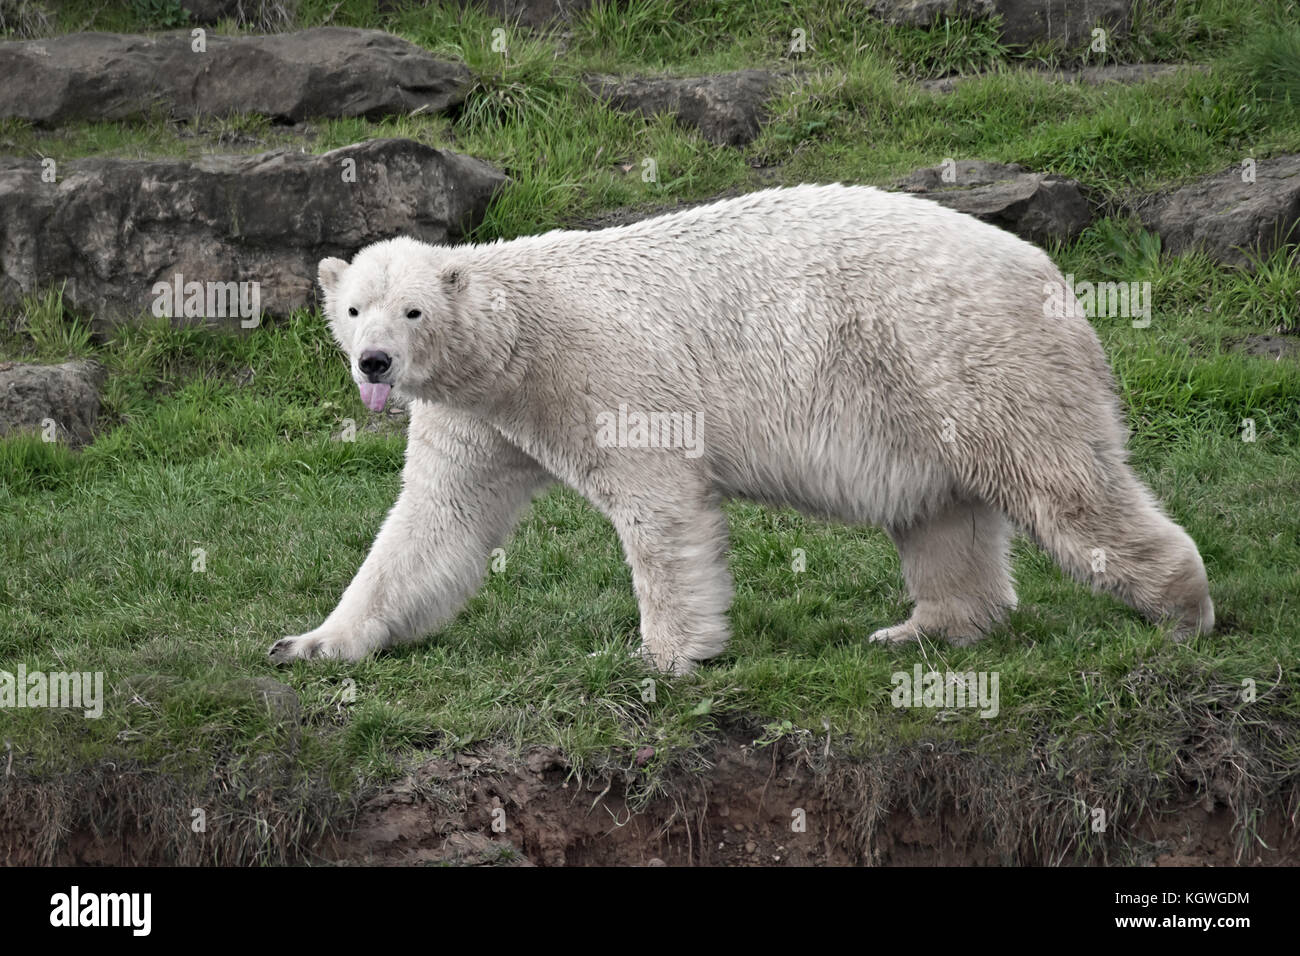 Un intero lato sull'immagine di un orso polare a piedi su erba guardando il viewer con la lingua fuori Foto Stock